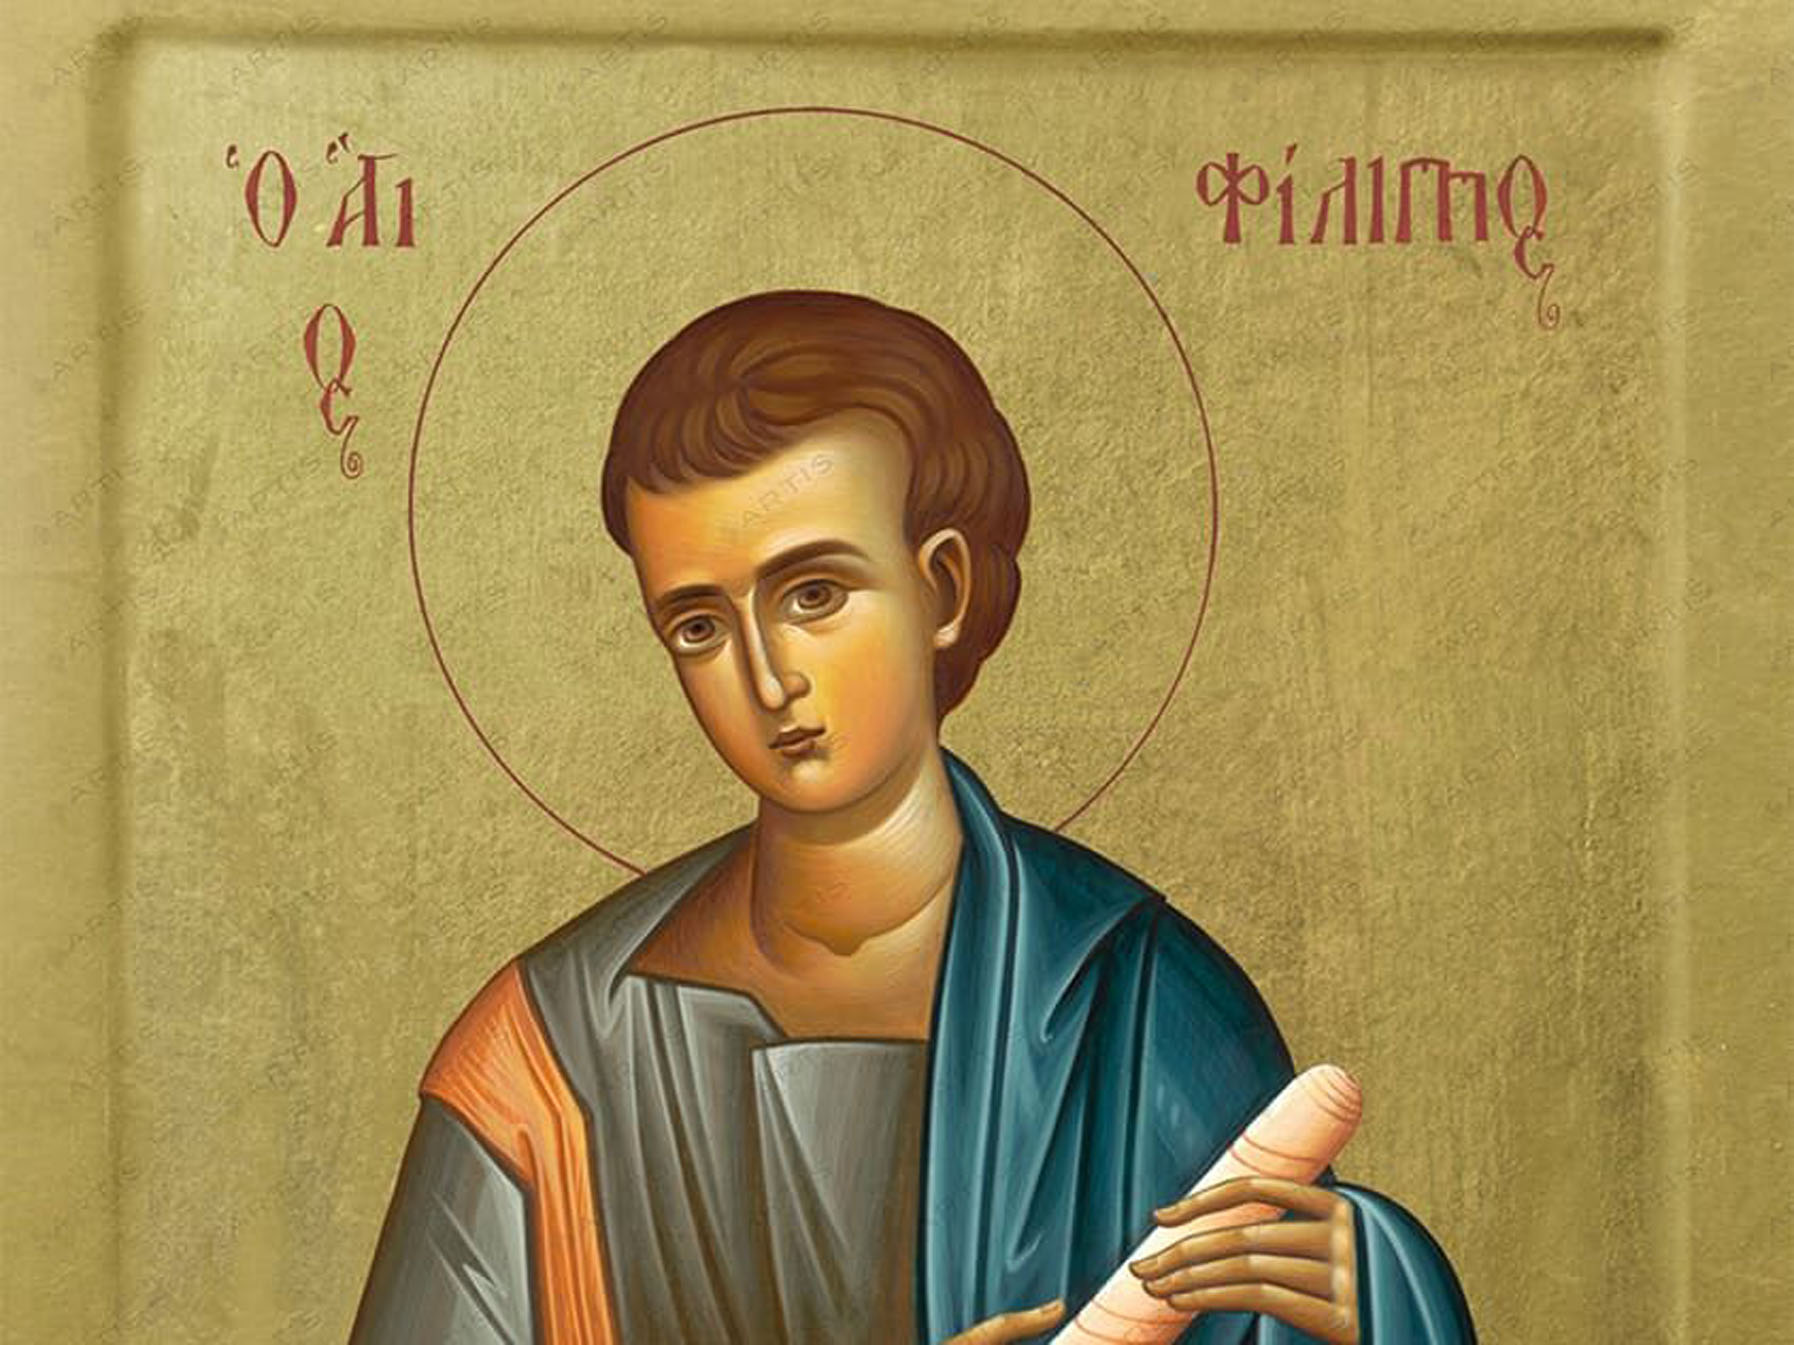 Σήμερα Τετάρτη 11 Οκτωβρίου τιμάται ο Άγιος Φίλιππος ο Απόστολος